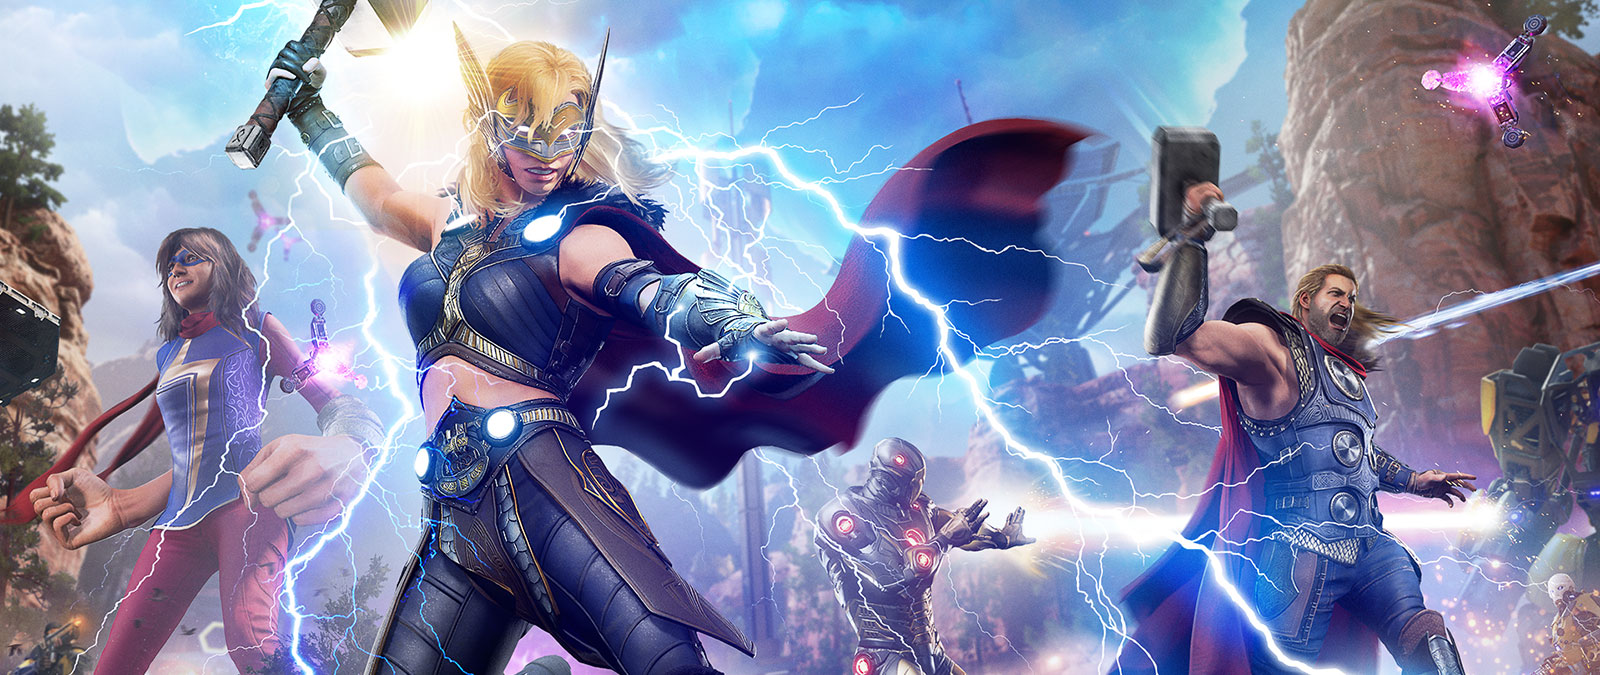 Jane Foster, Potężny Thor, spuszcza błyskawicę na mechanicznego wroga.